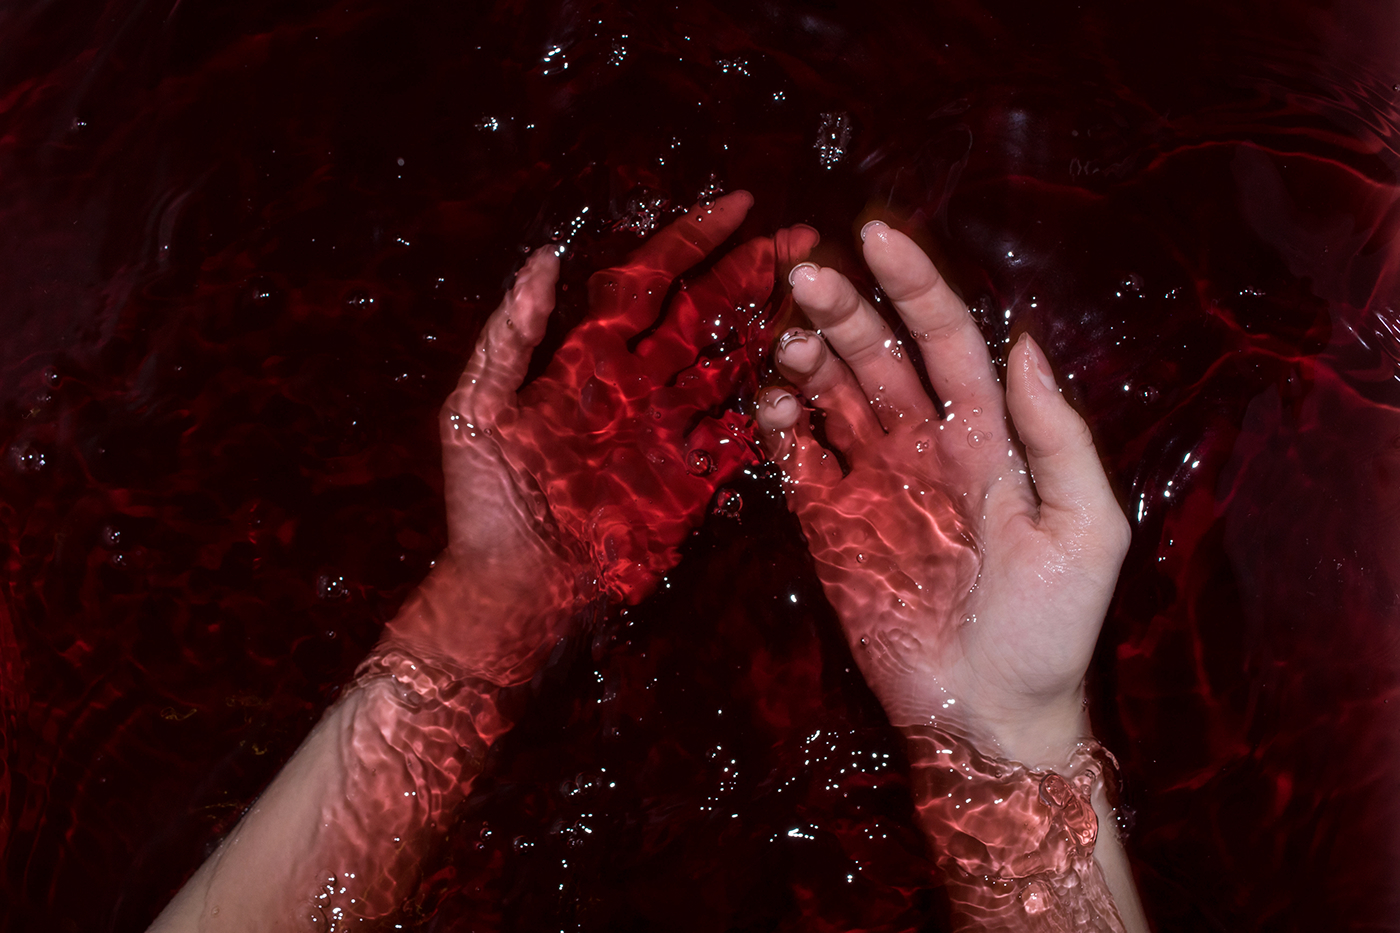 red bath experimental art blood depression anxiety Drowning girl body bath